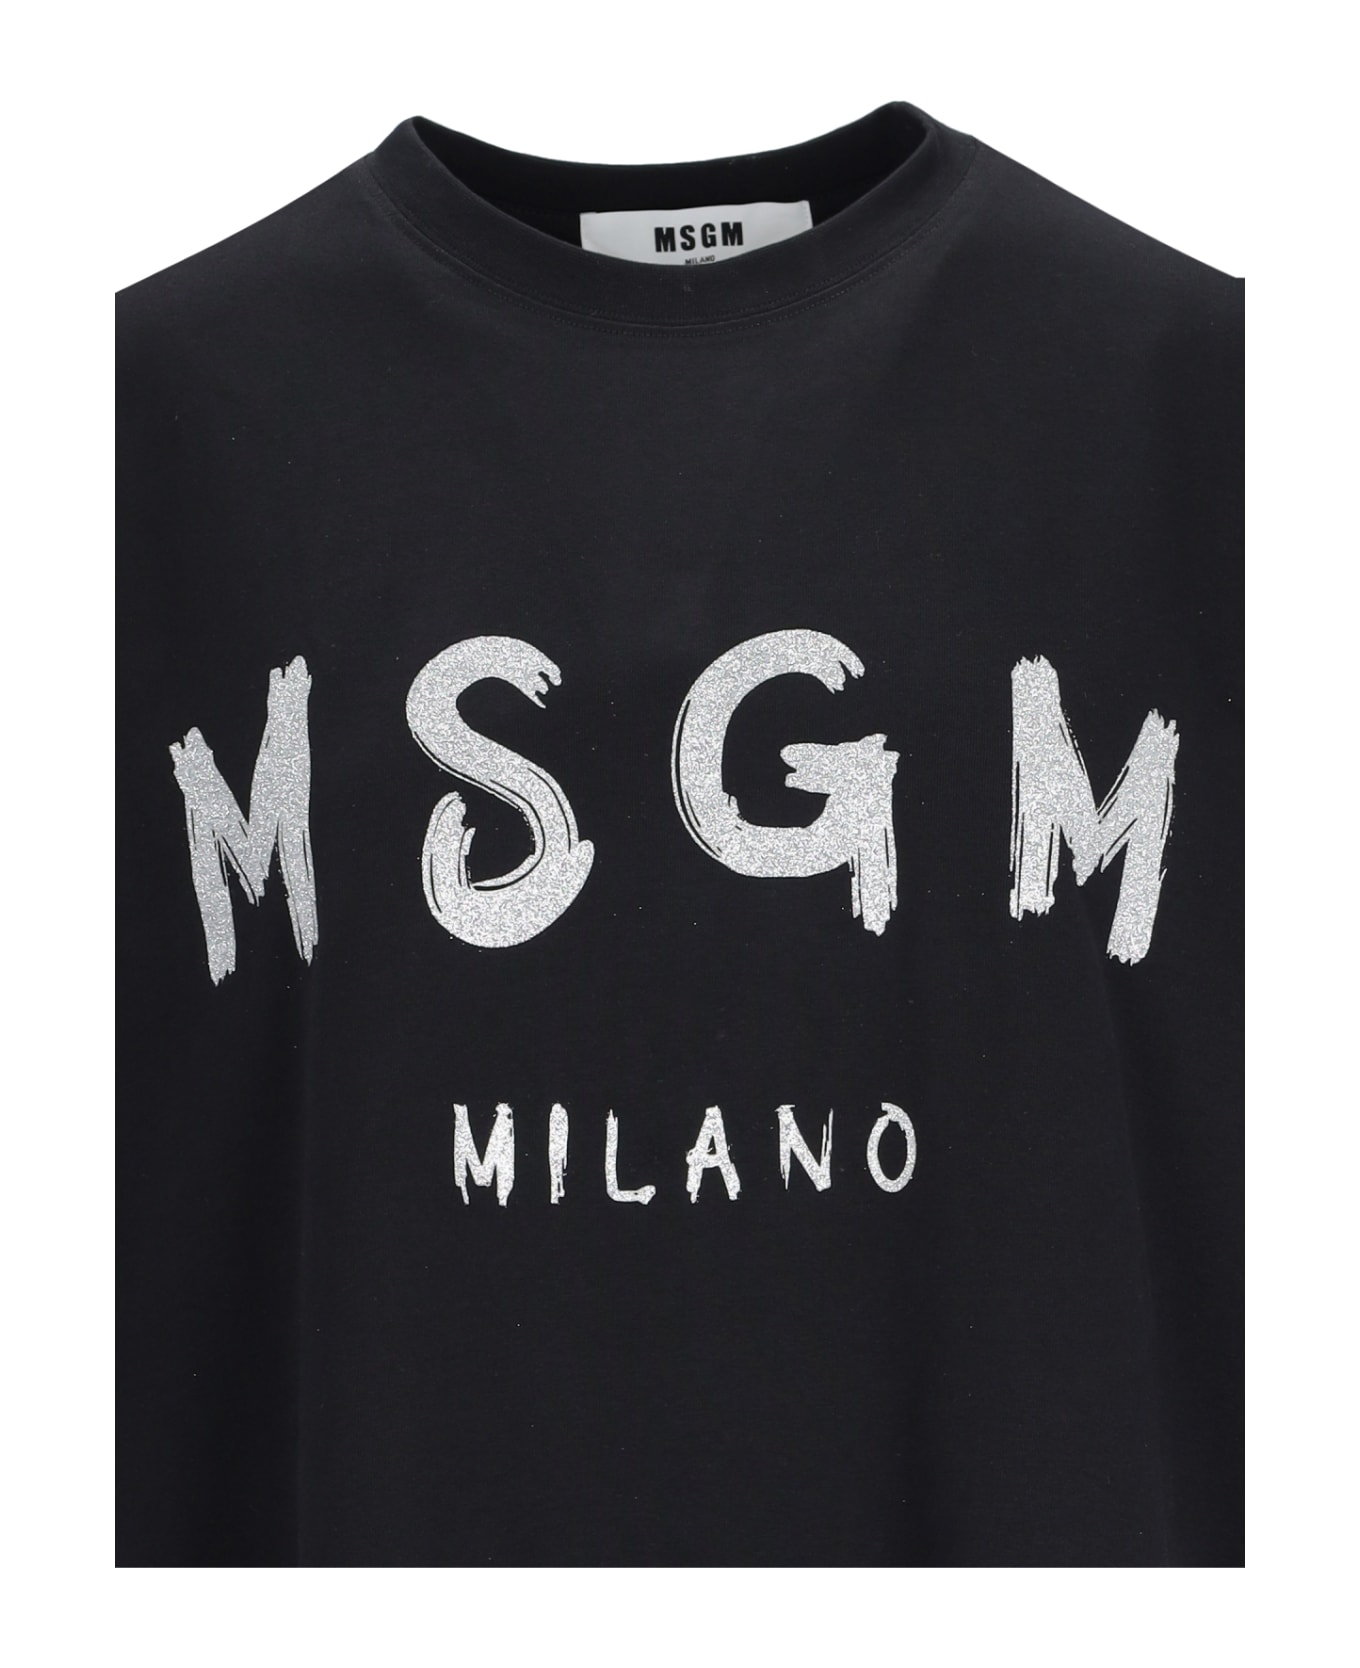 MSGM Printed T-shirt - Black   Tシャツ